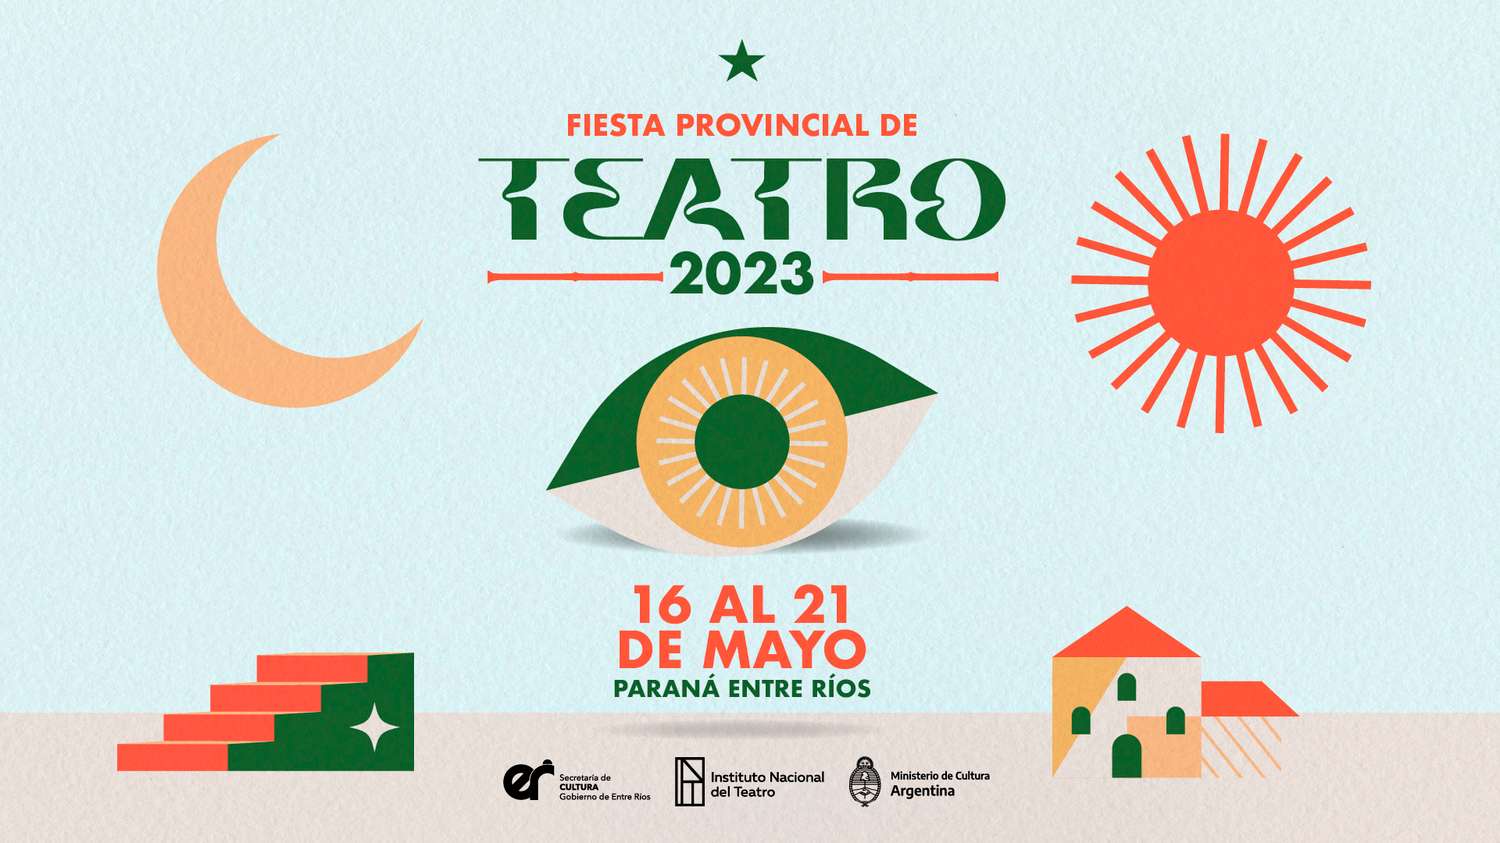 Paraná será sede de la Fiesta Provincial de Teatro – Entre Ríos 2023